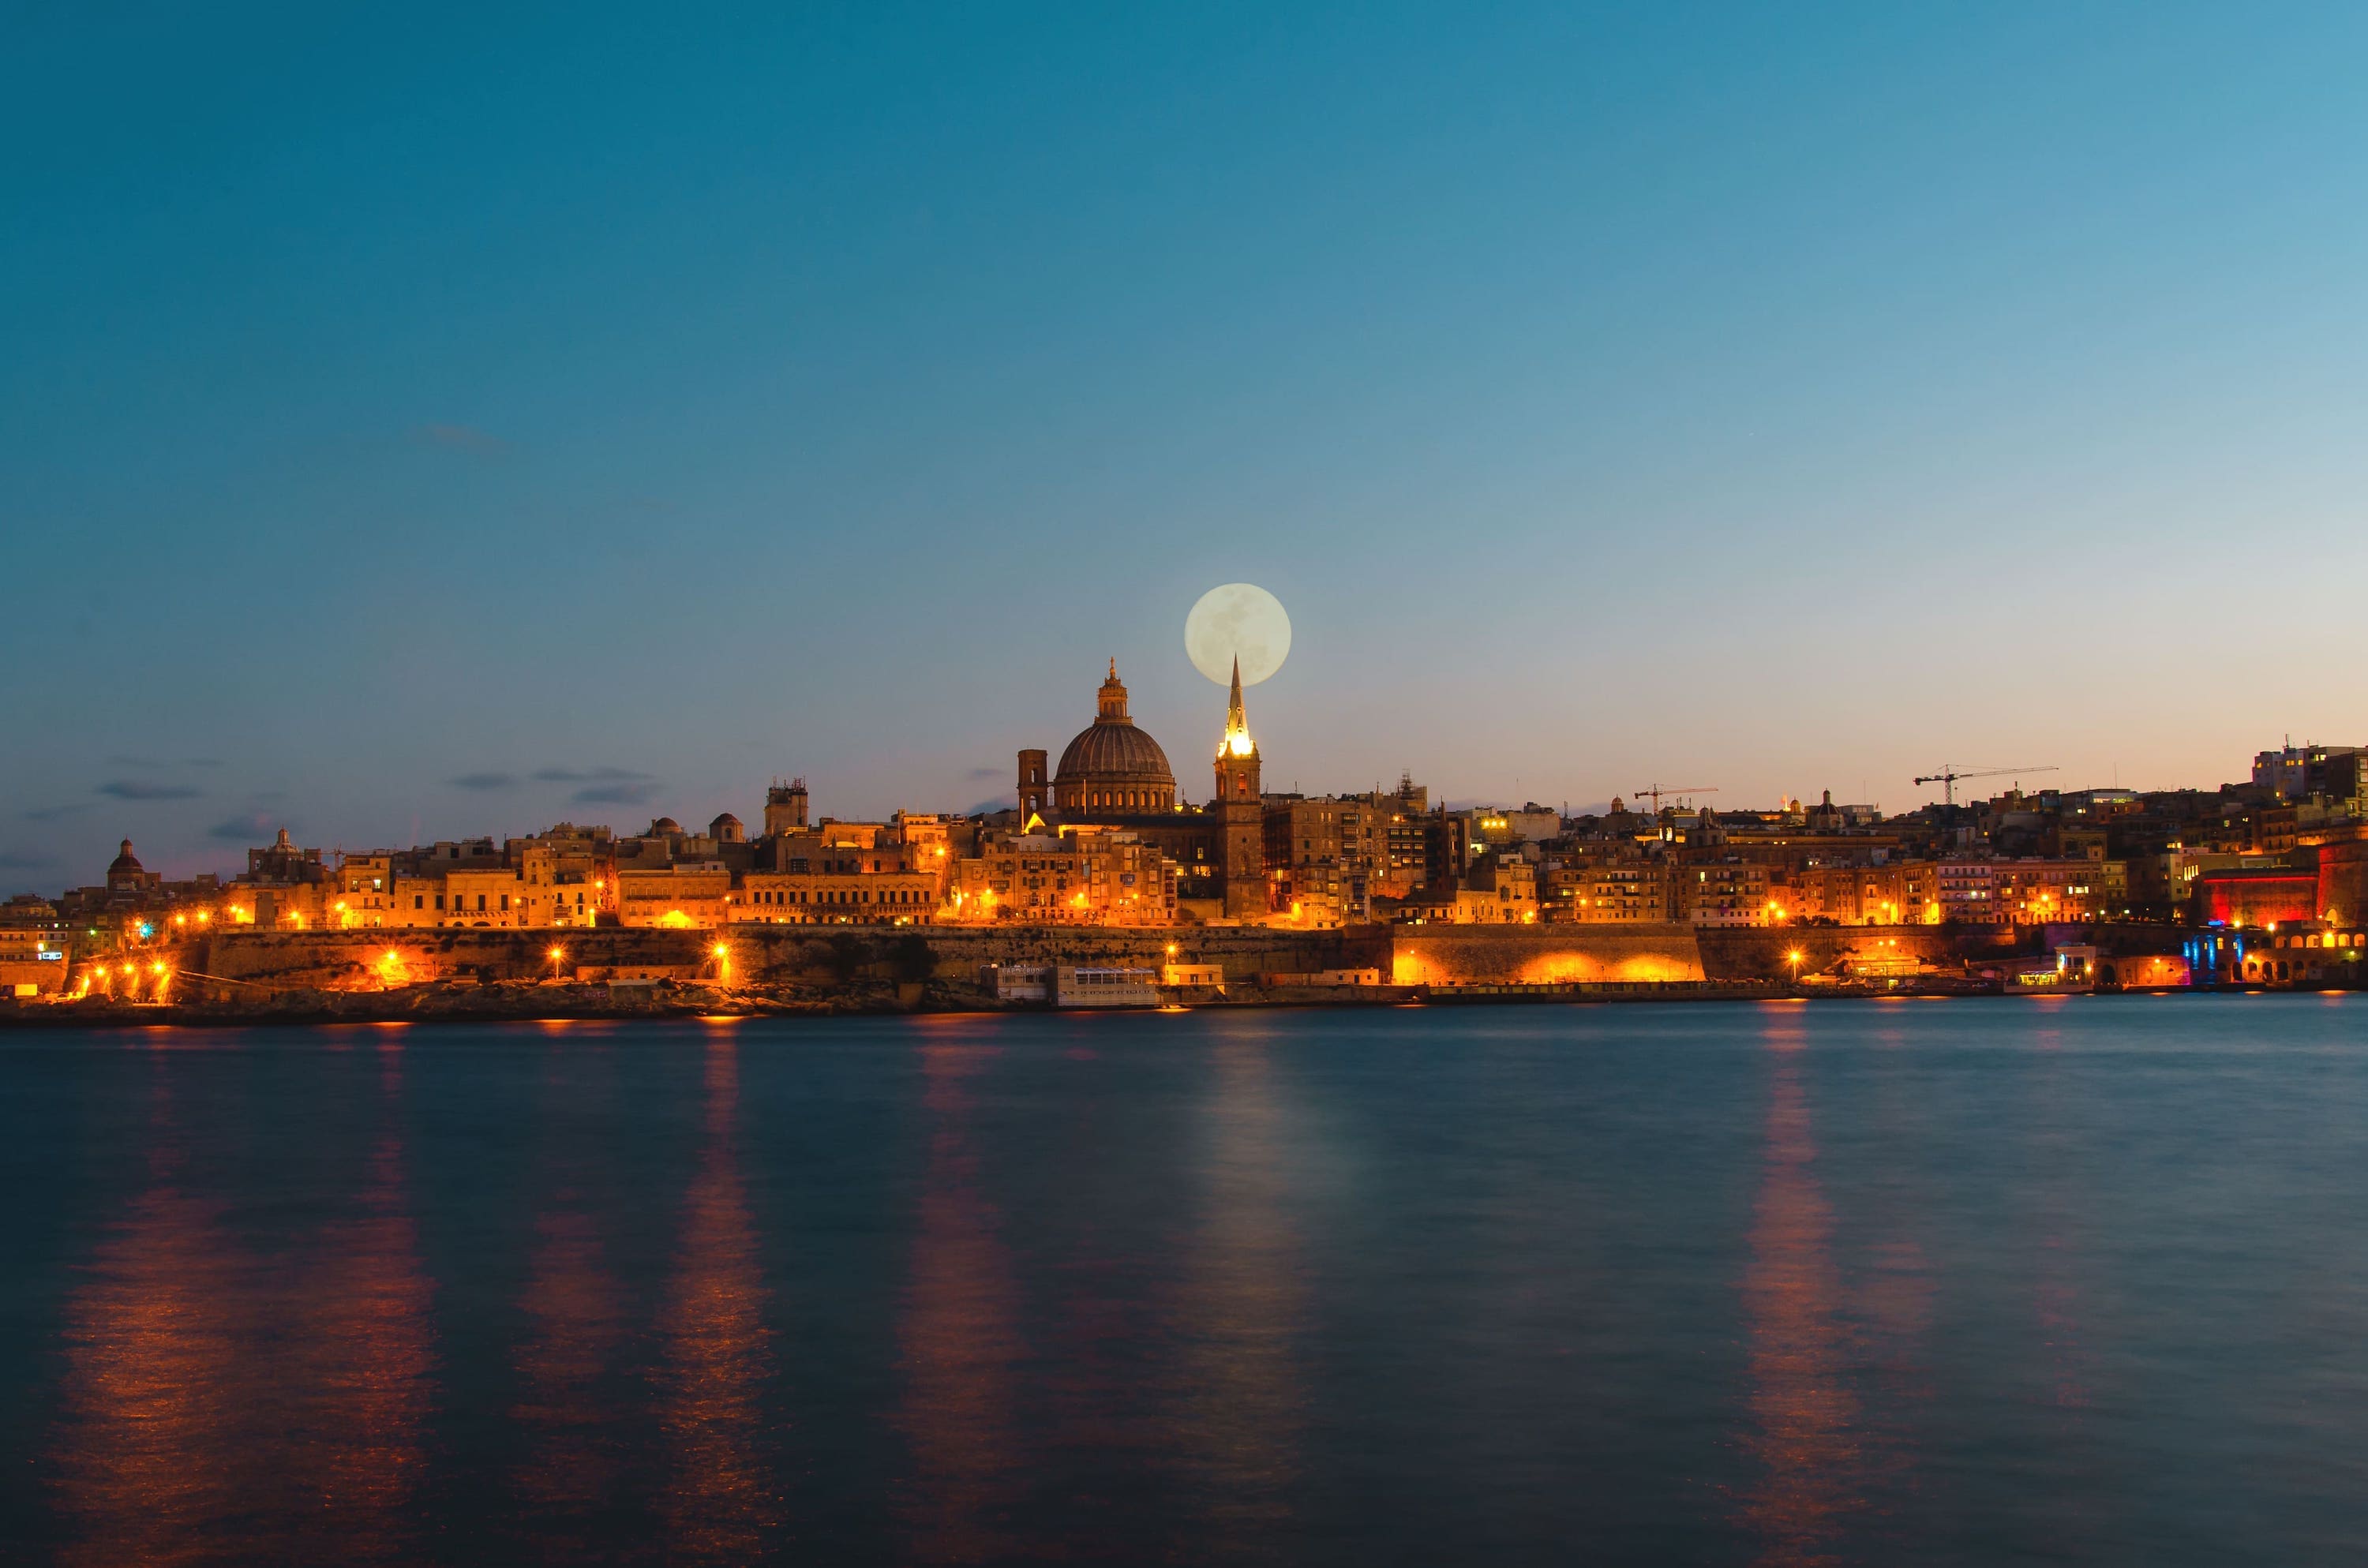 Vue de nuit sur la capitale de Malte : La Valette